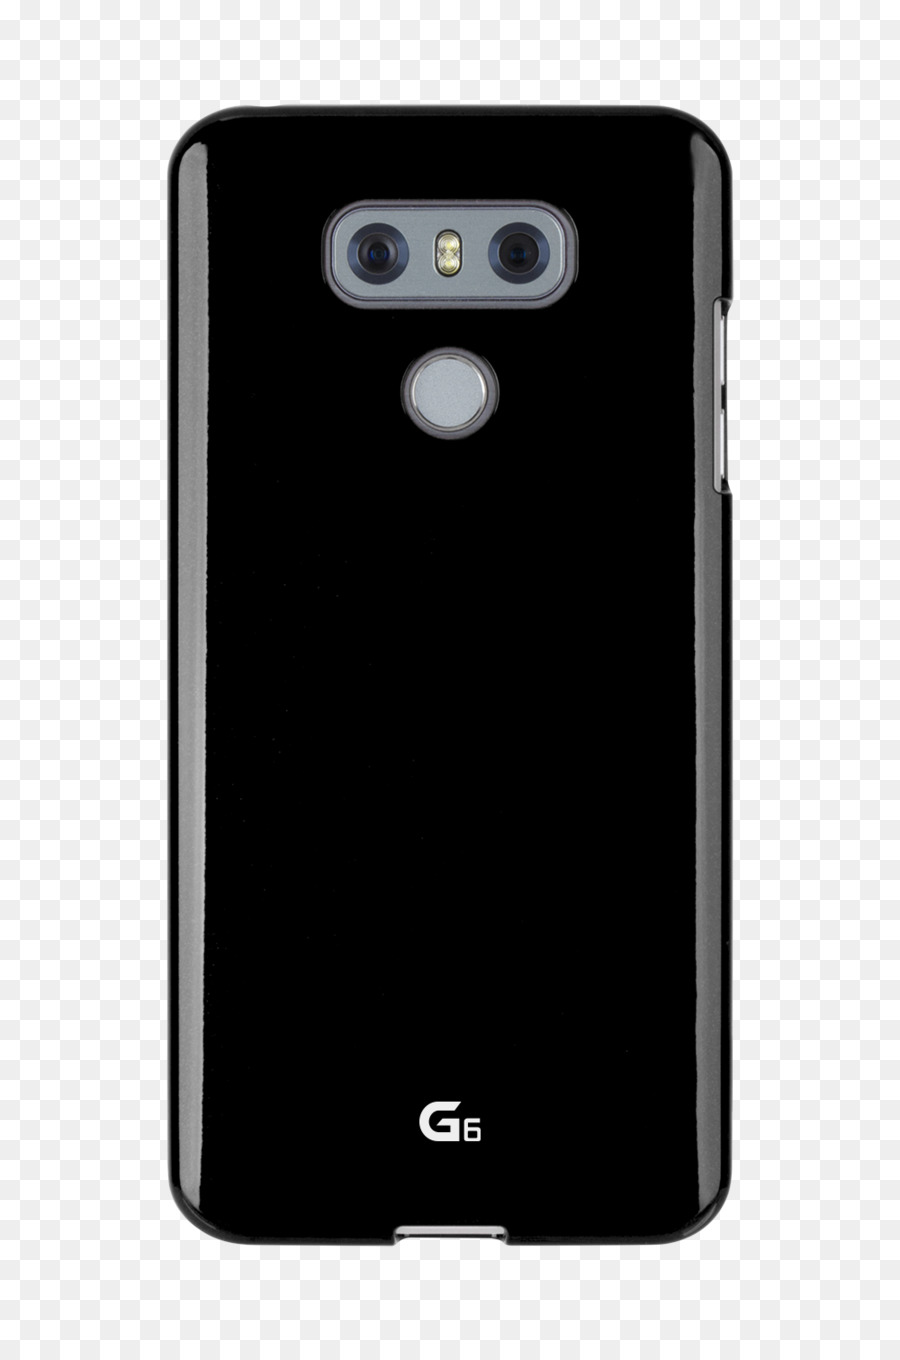 คุณสมบัติโทรศัพท์，Samsung กาแล็กซี่ขอ S7 PNG